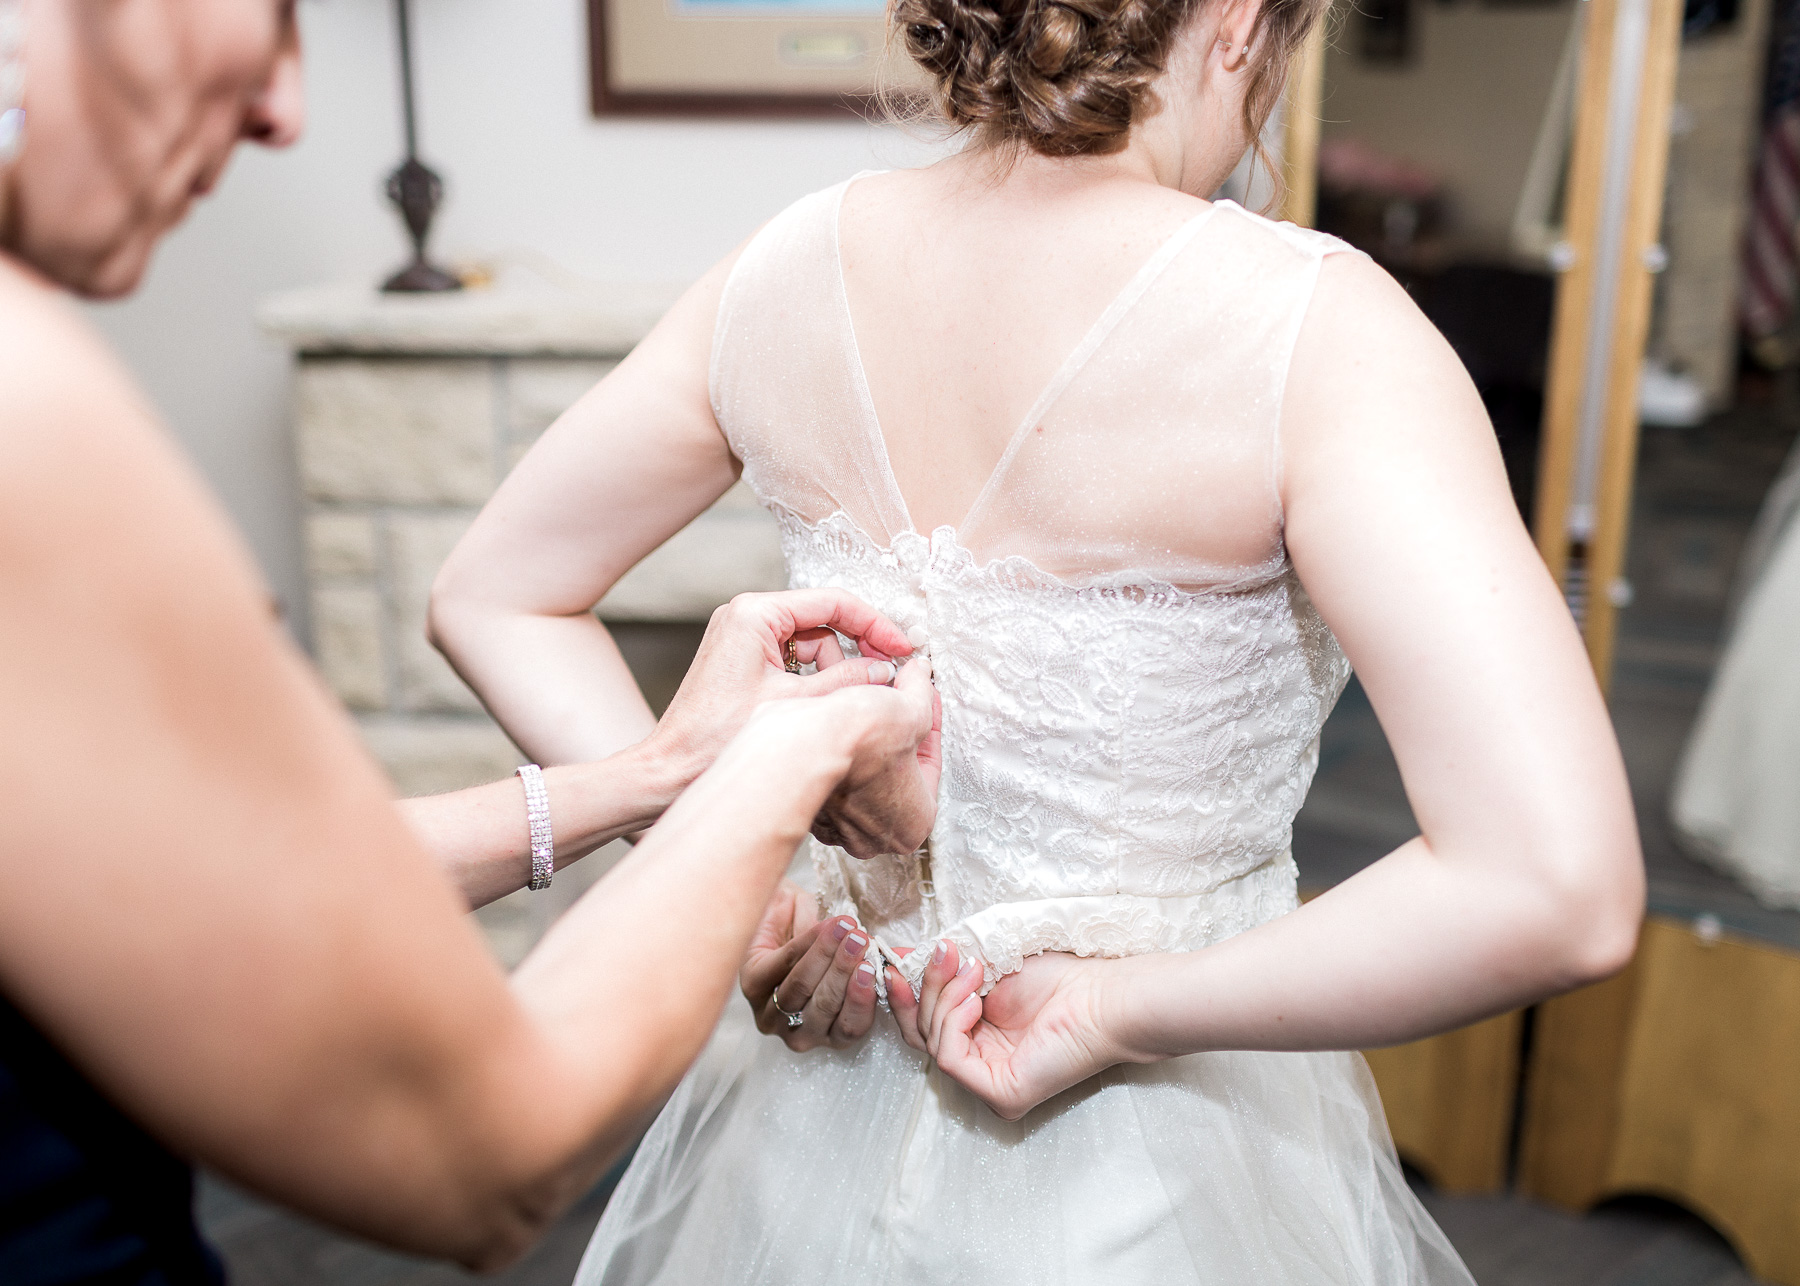 zipping up wedding dress